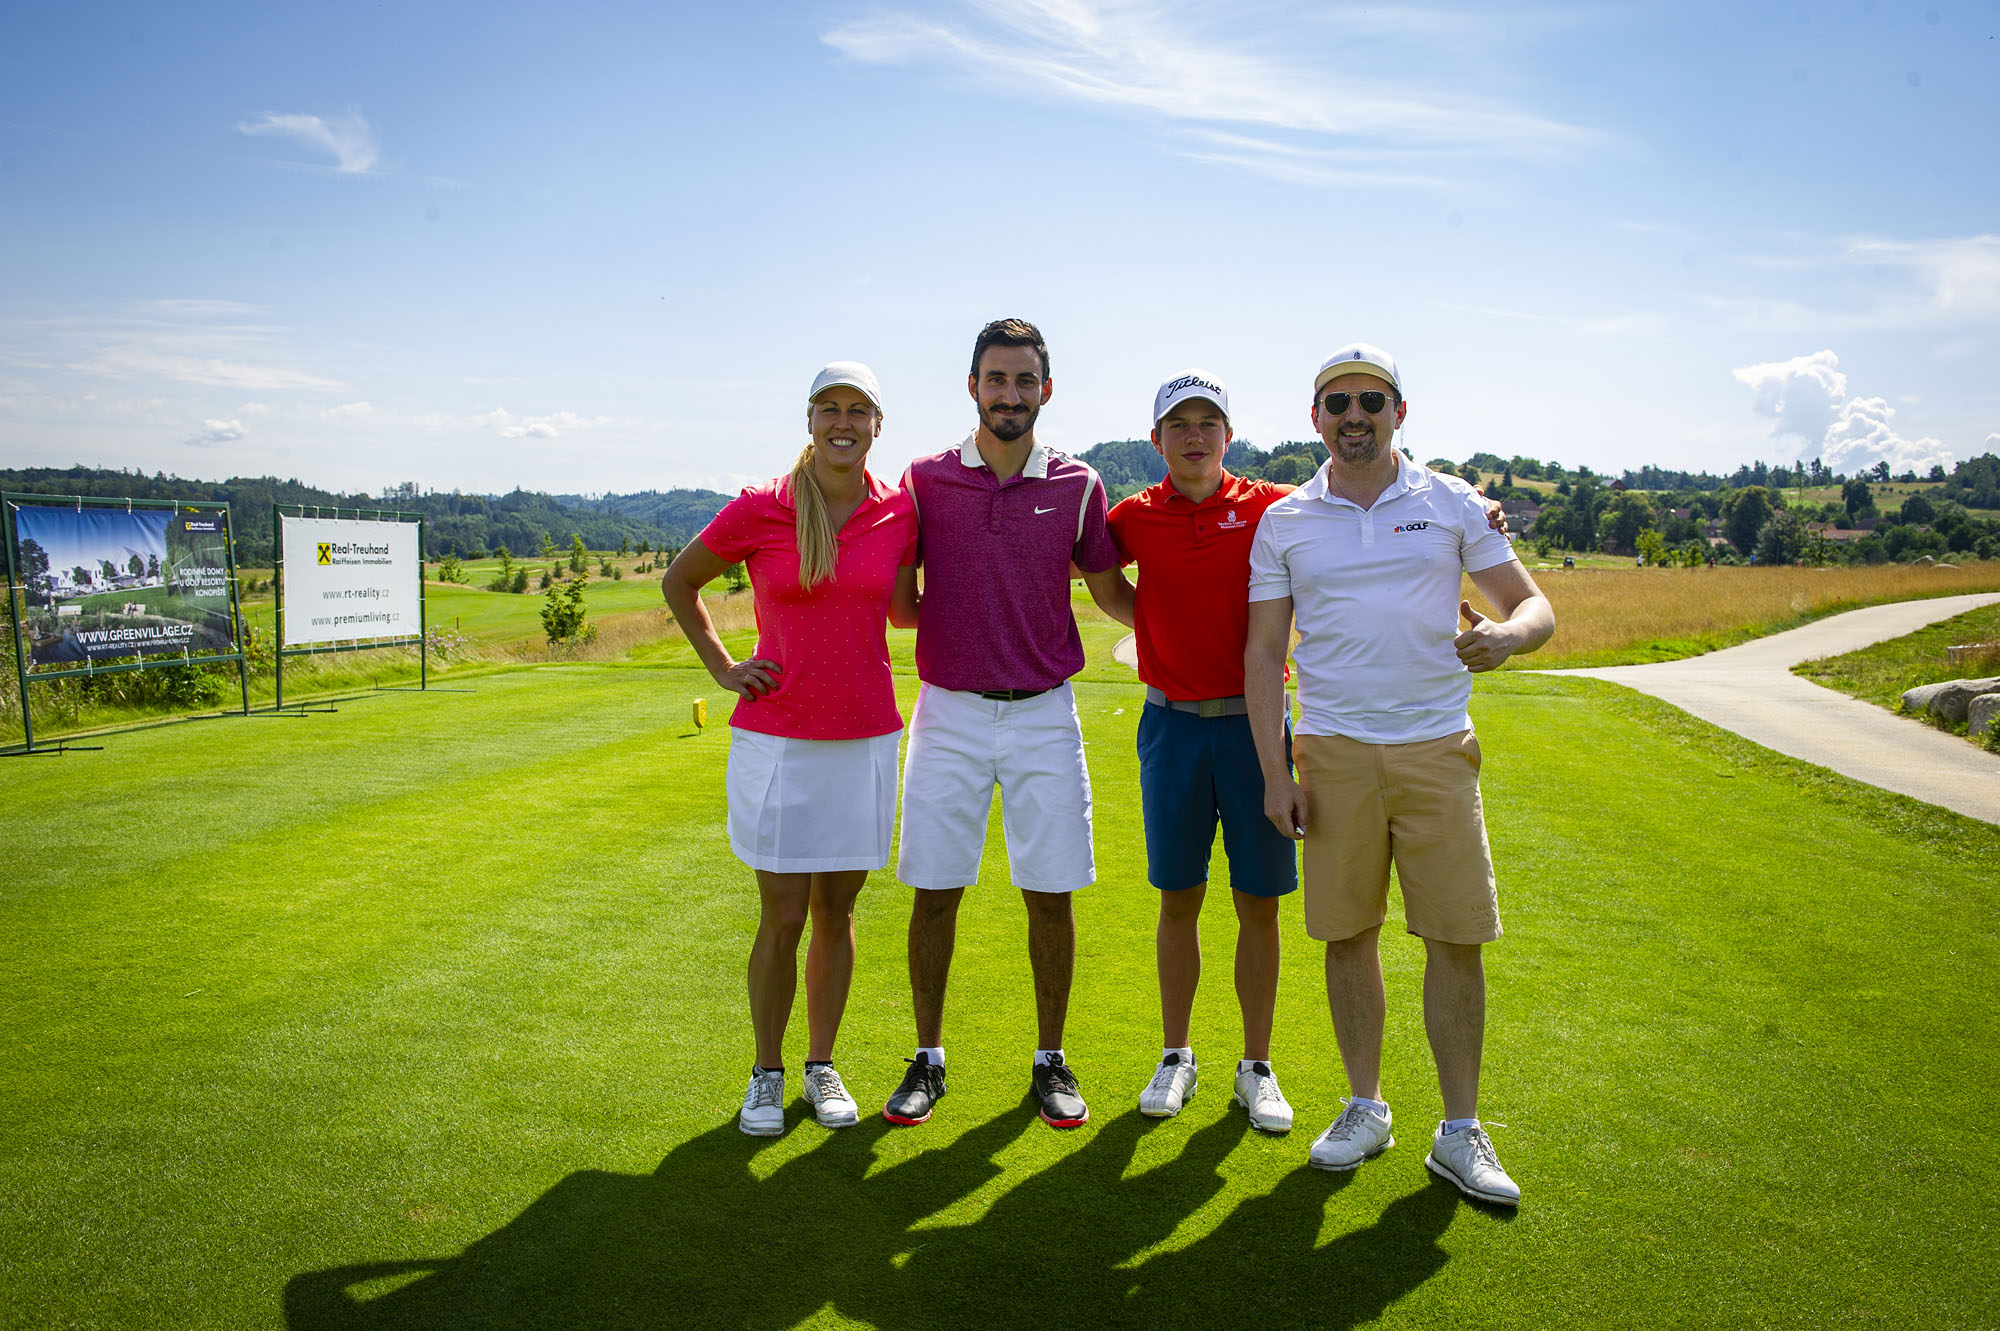 Golf Channel Business Tour odehrála svůj druhý letošní turnaj na Kácově (foto: Ladislav Adámek)